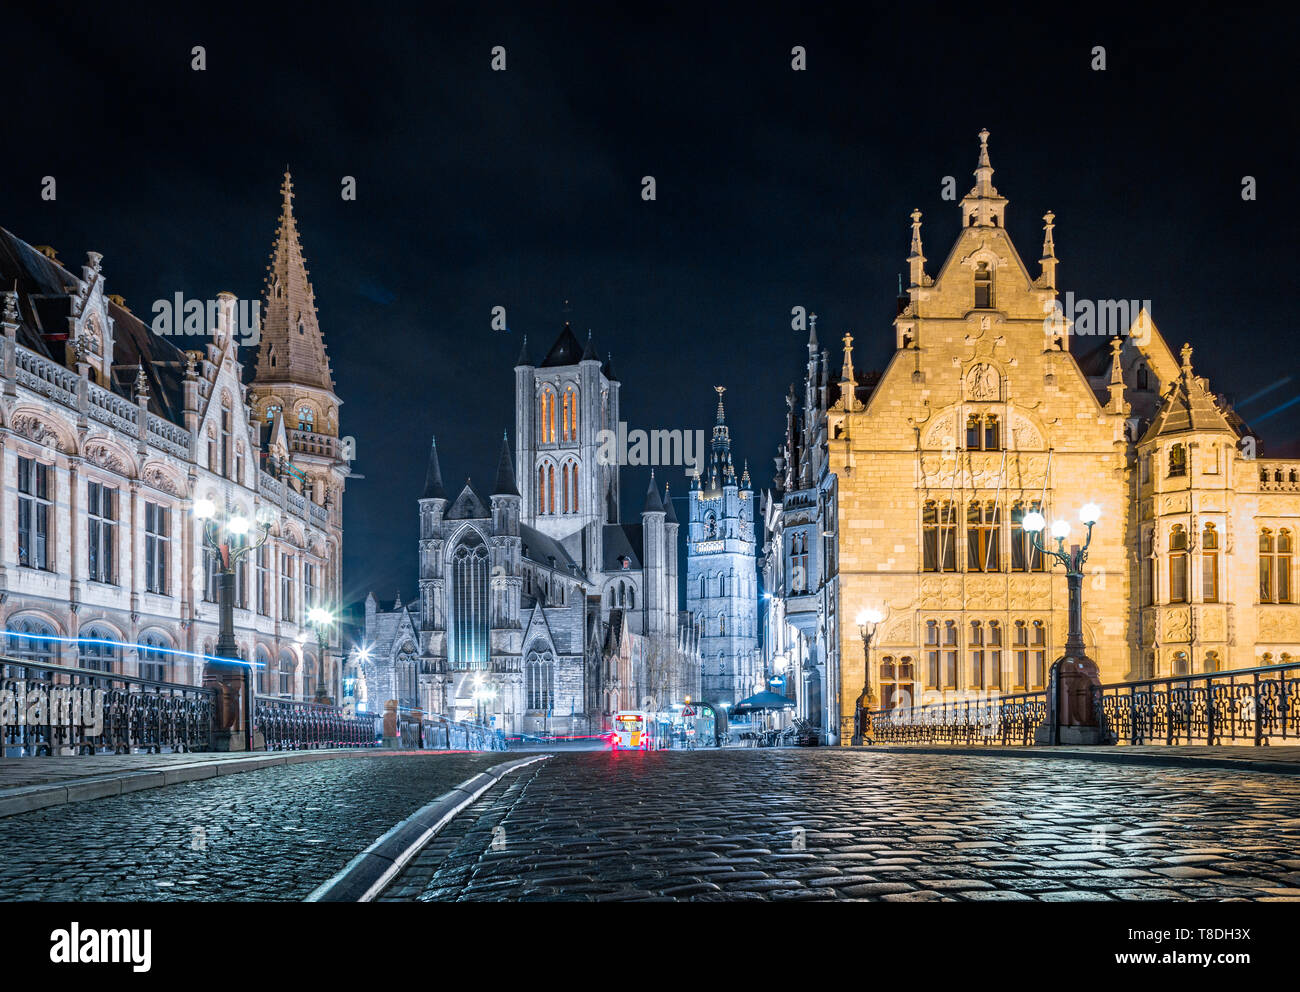 Vue panoramique sur le centre-ville historique de Gand illuminée en très beau post twilight blue hour pendant le coucher du soleil au crépuscule, Gand, Flandre orientale, Belgique Banque D'Images